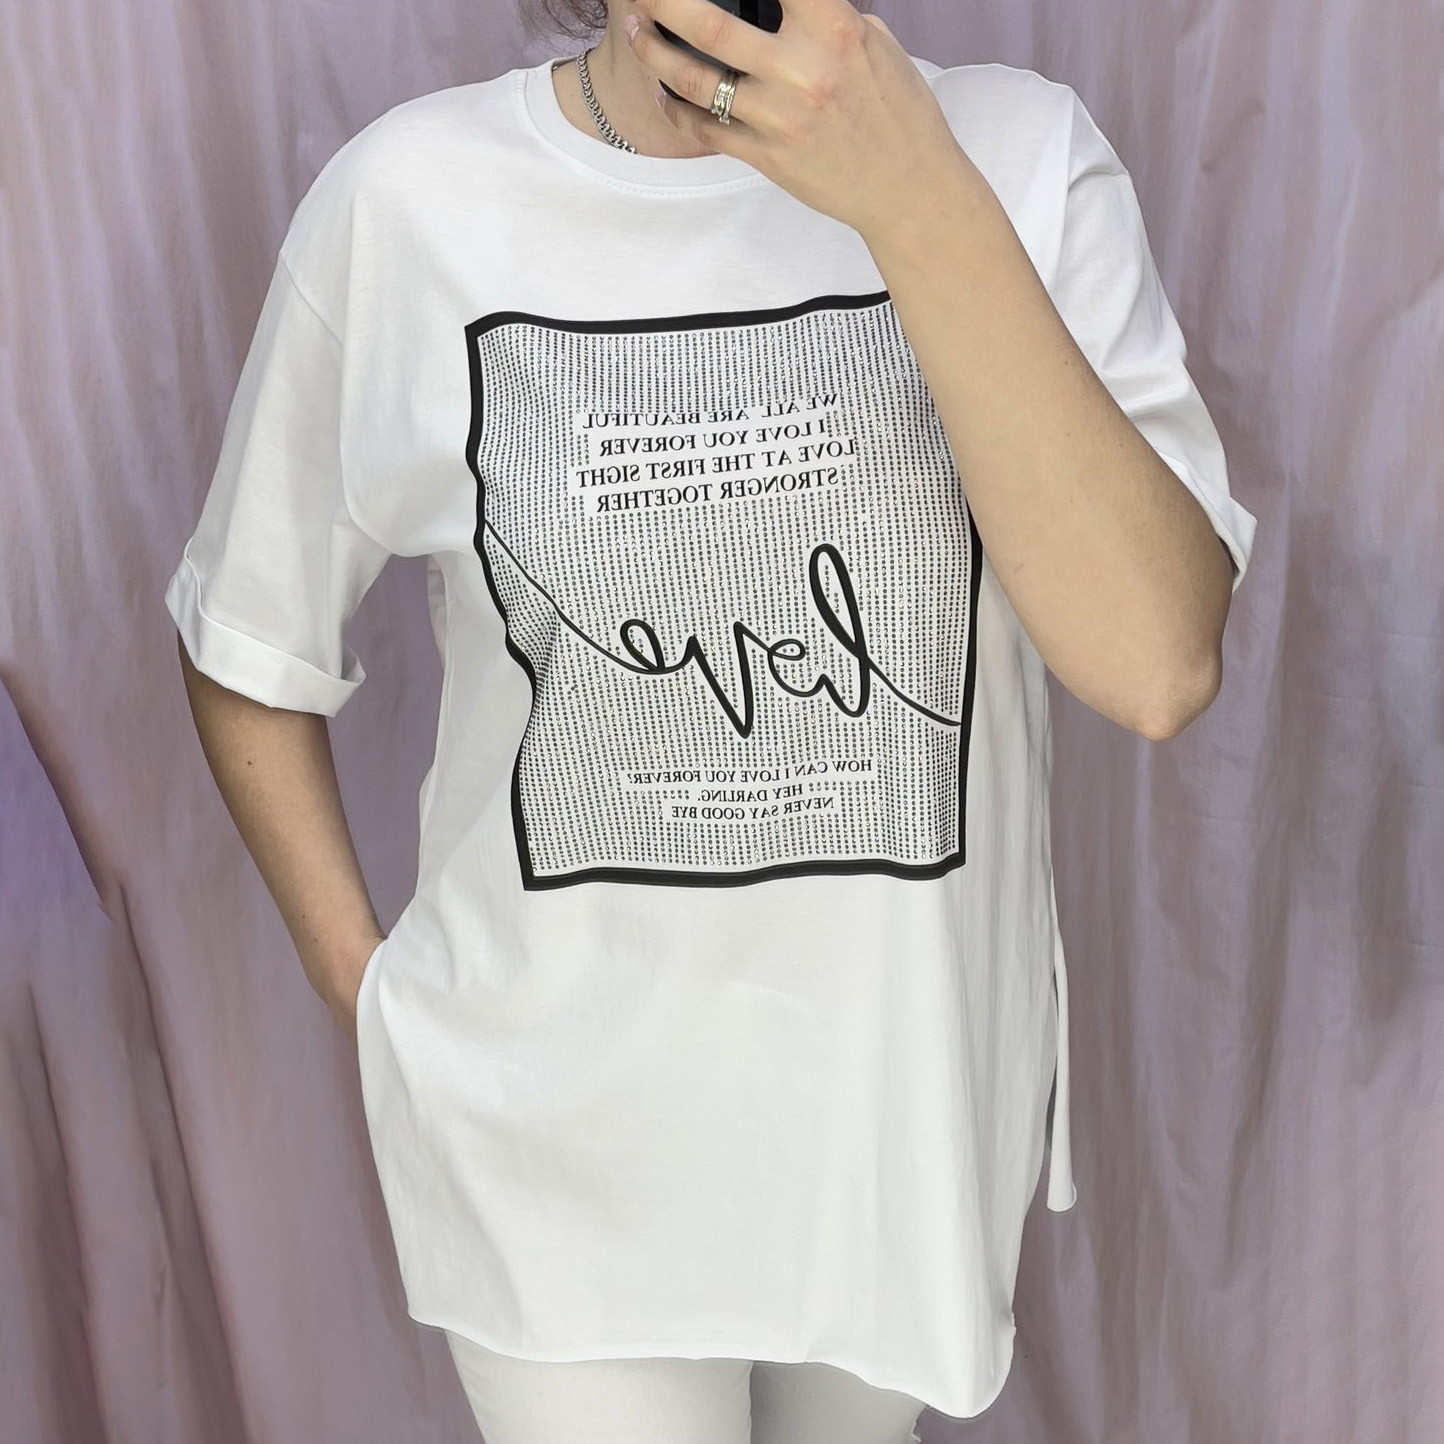 4540-10* белая женская футболка (коттон, 6 ед. размеры норма: S. M. L, размеры дублируются) выдача на следующий день